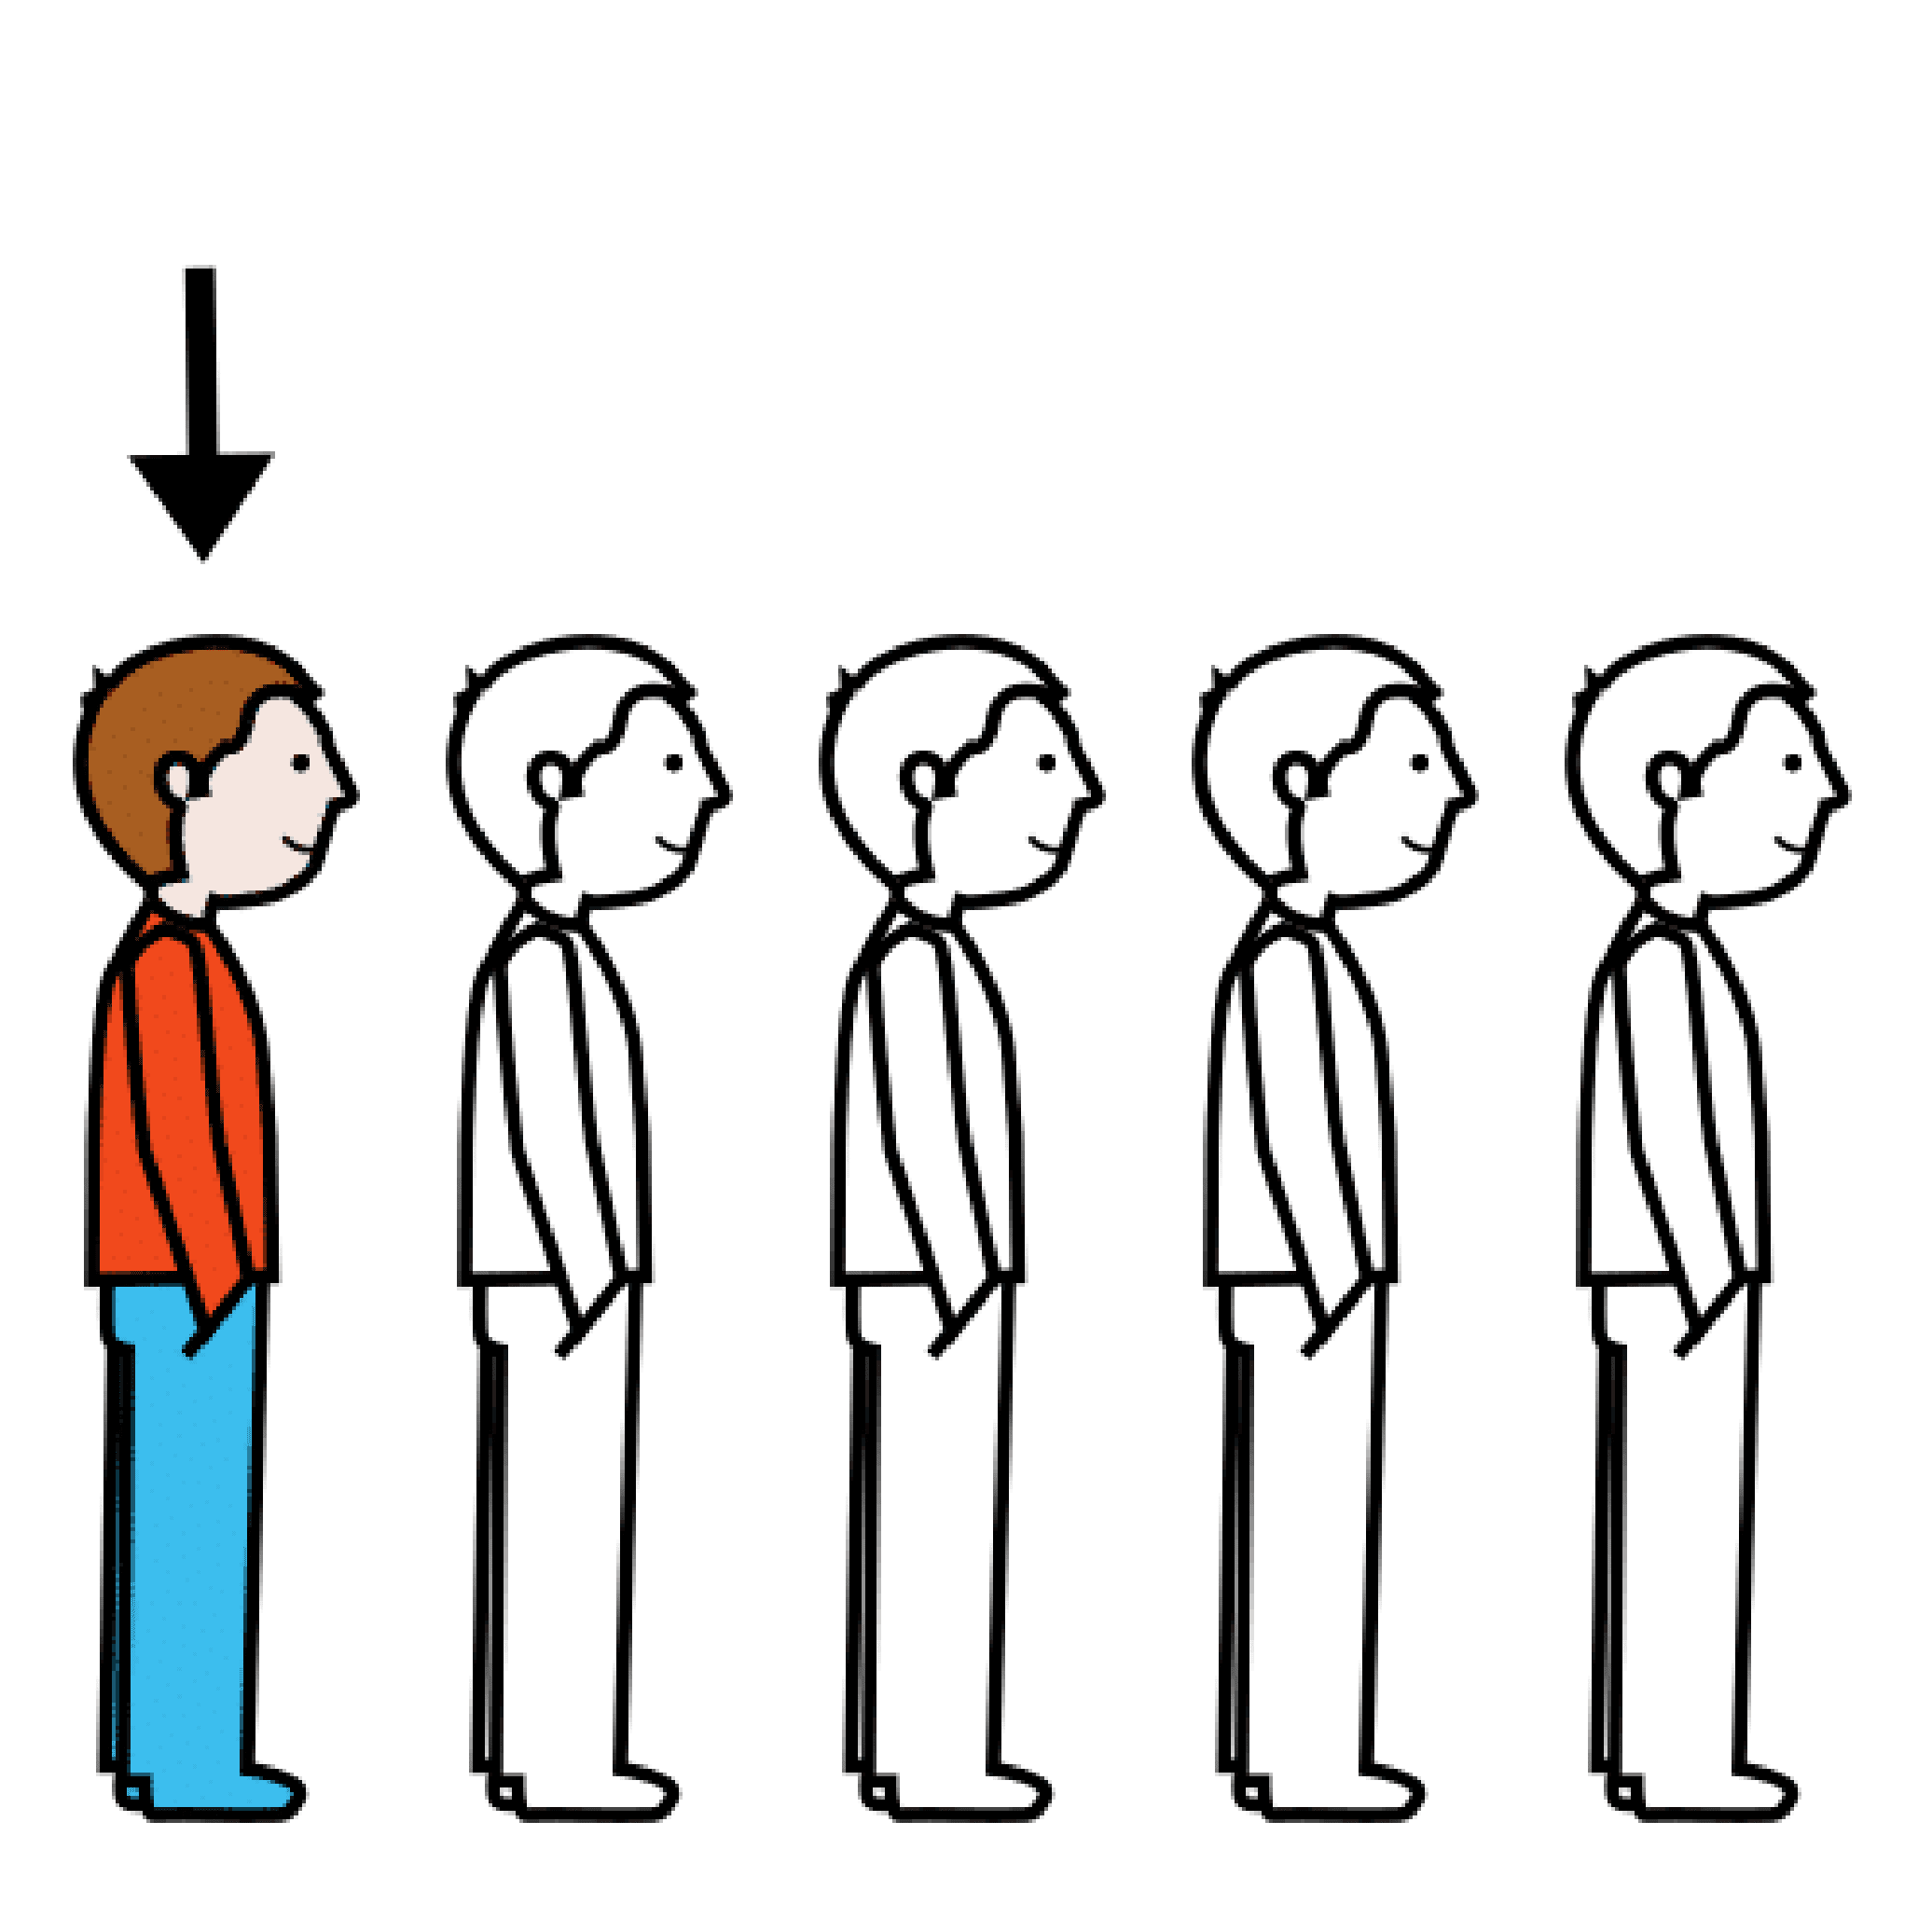 Cinco personas en fila colocadas de perfil. Las cuatro primeras sin color. La última, señalada por una flecha, a color.